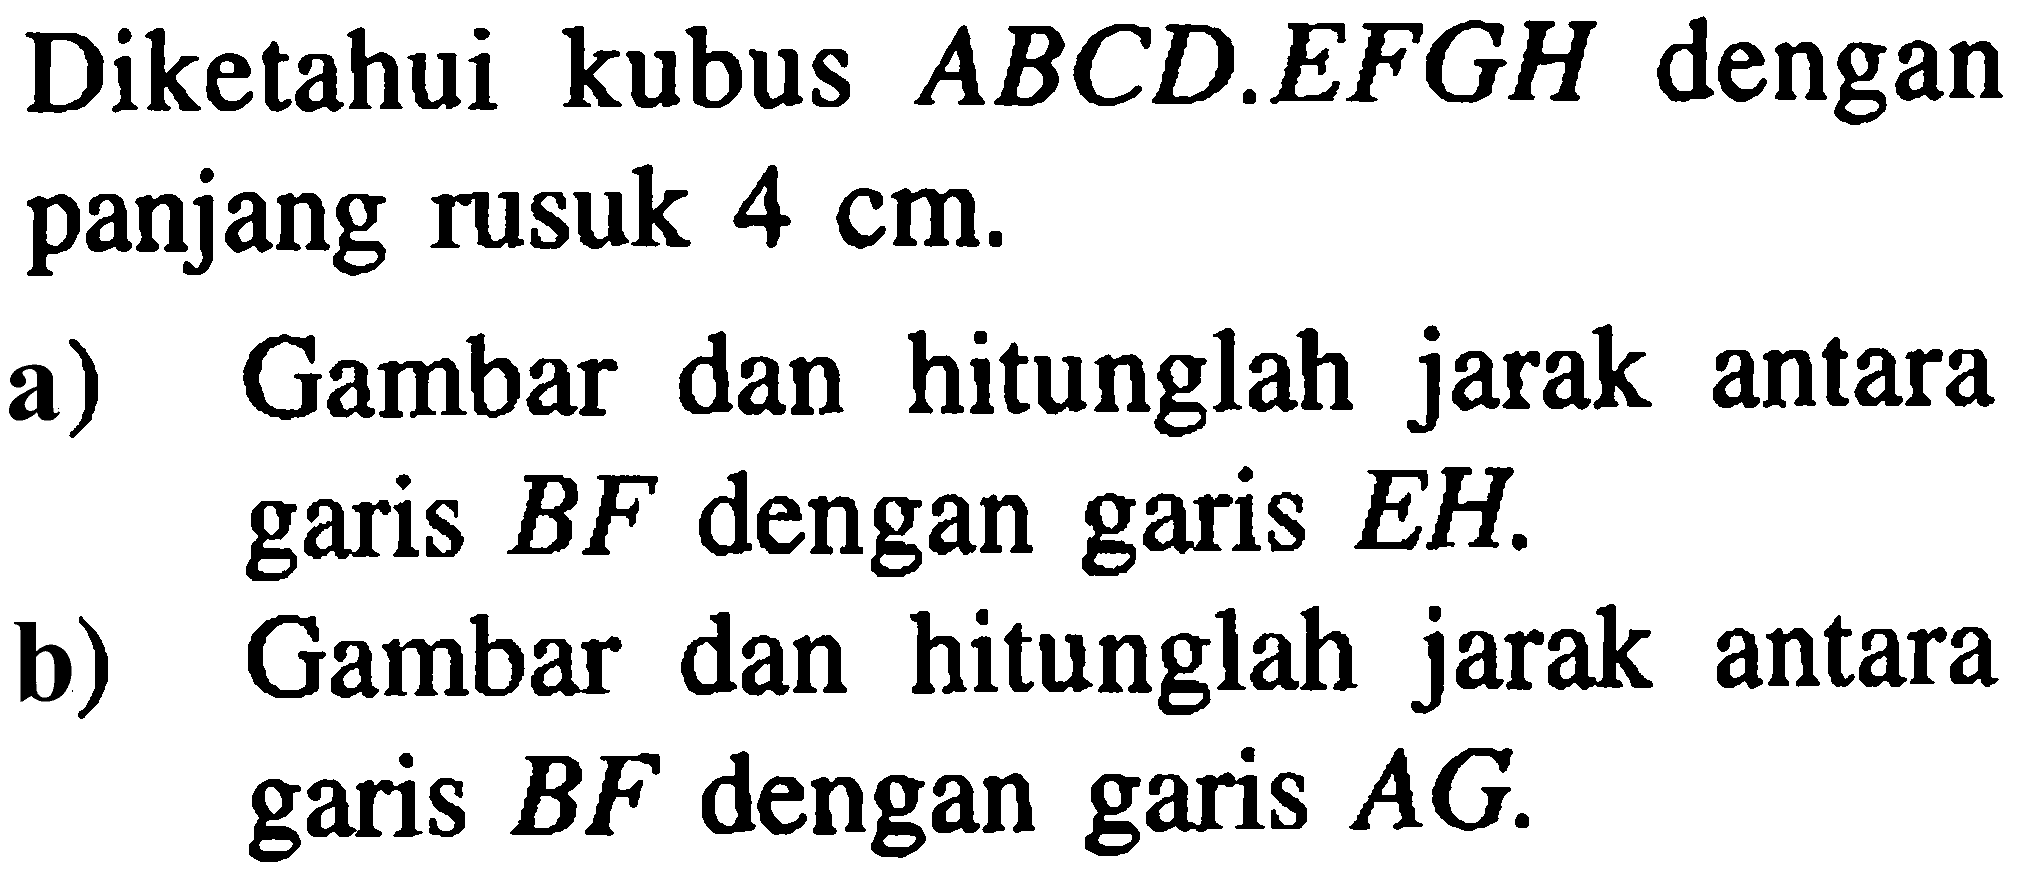 ABCDEFGH dengan Diketahui kubus panjang rusuk 4 cm. a) Gambar dan hitunglah jarak antara garis BF dengan garis EH. b) Gambar dan hitunglah jarak antara garis BF dan garis AG.